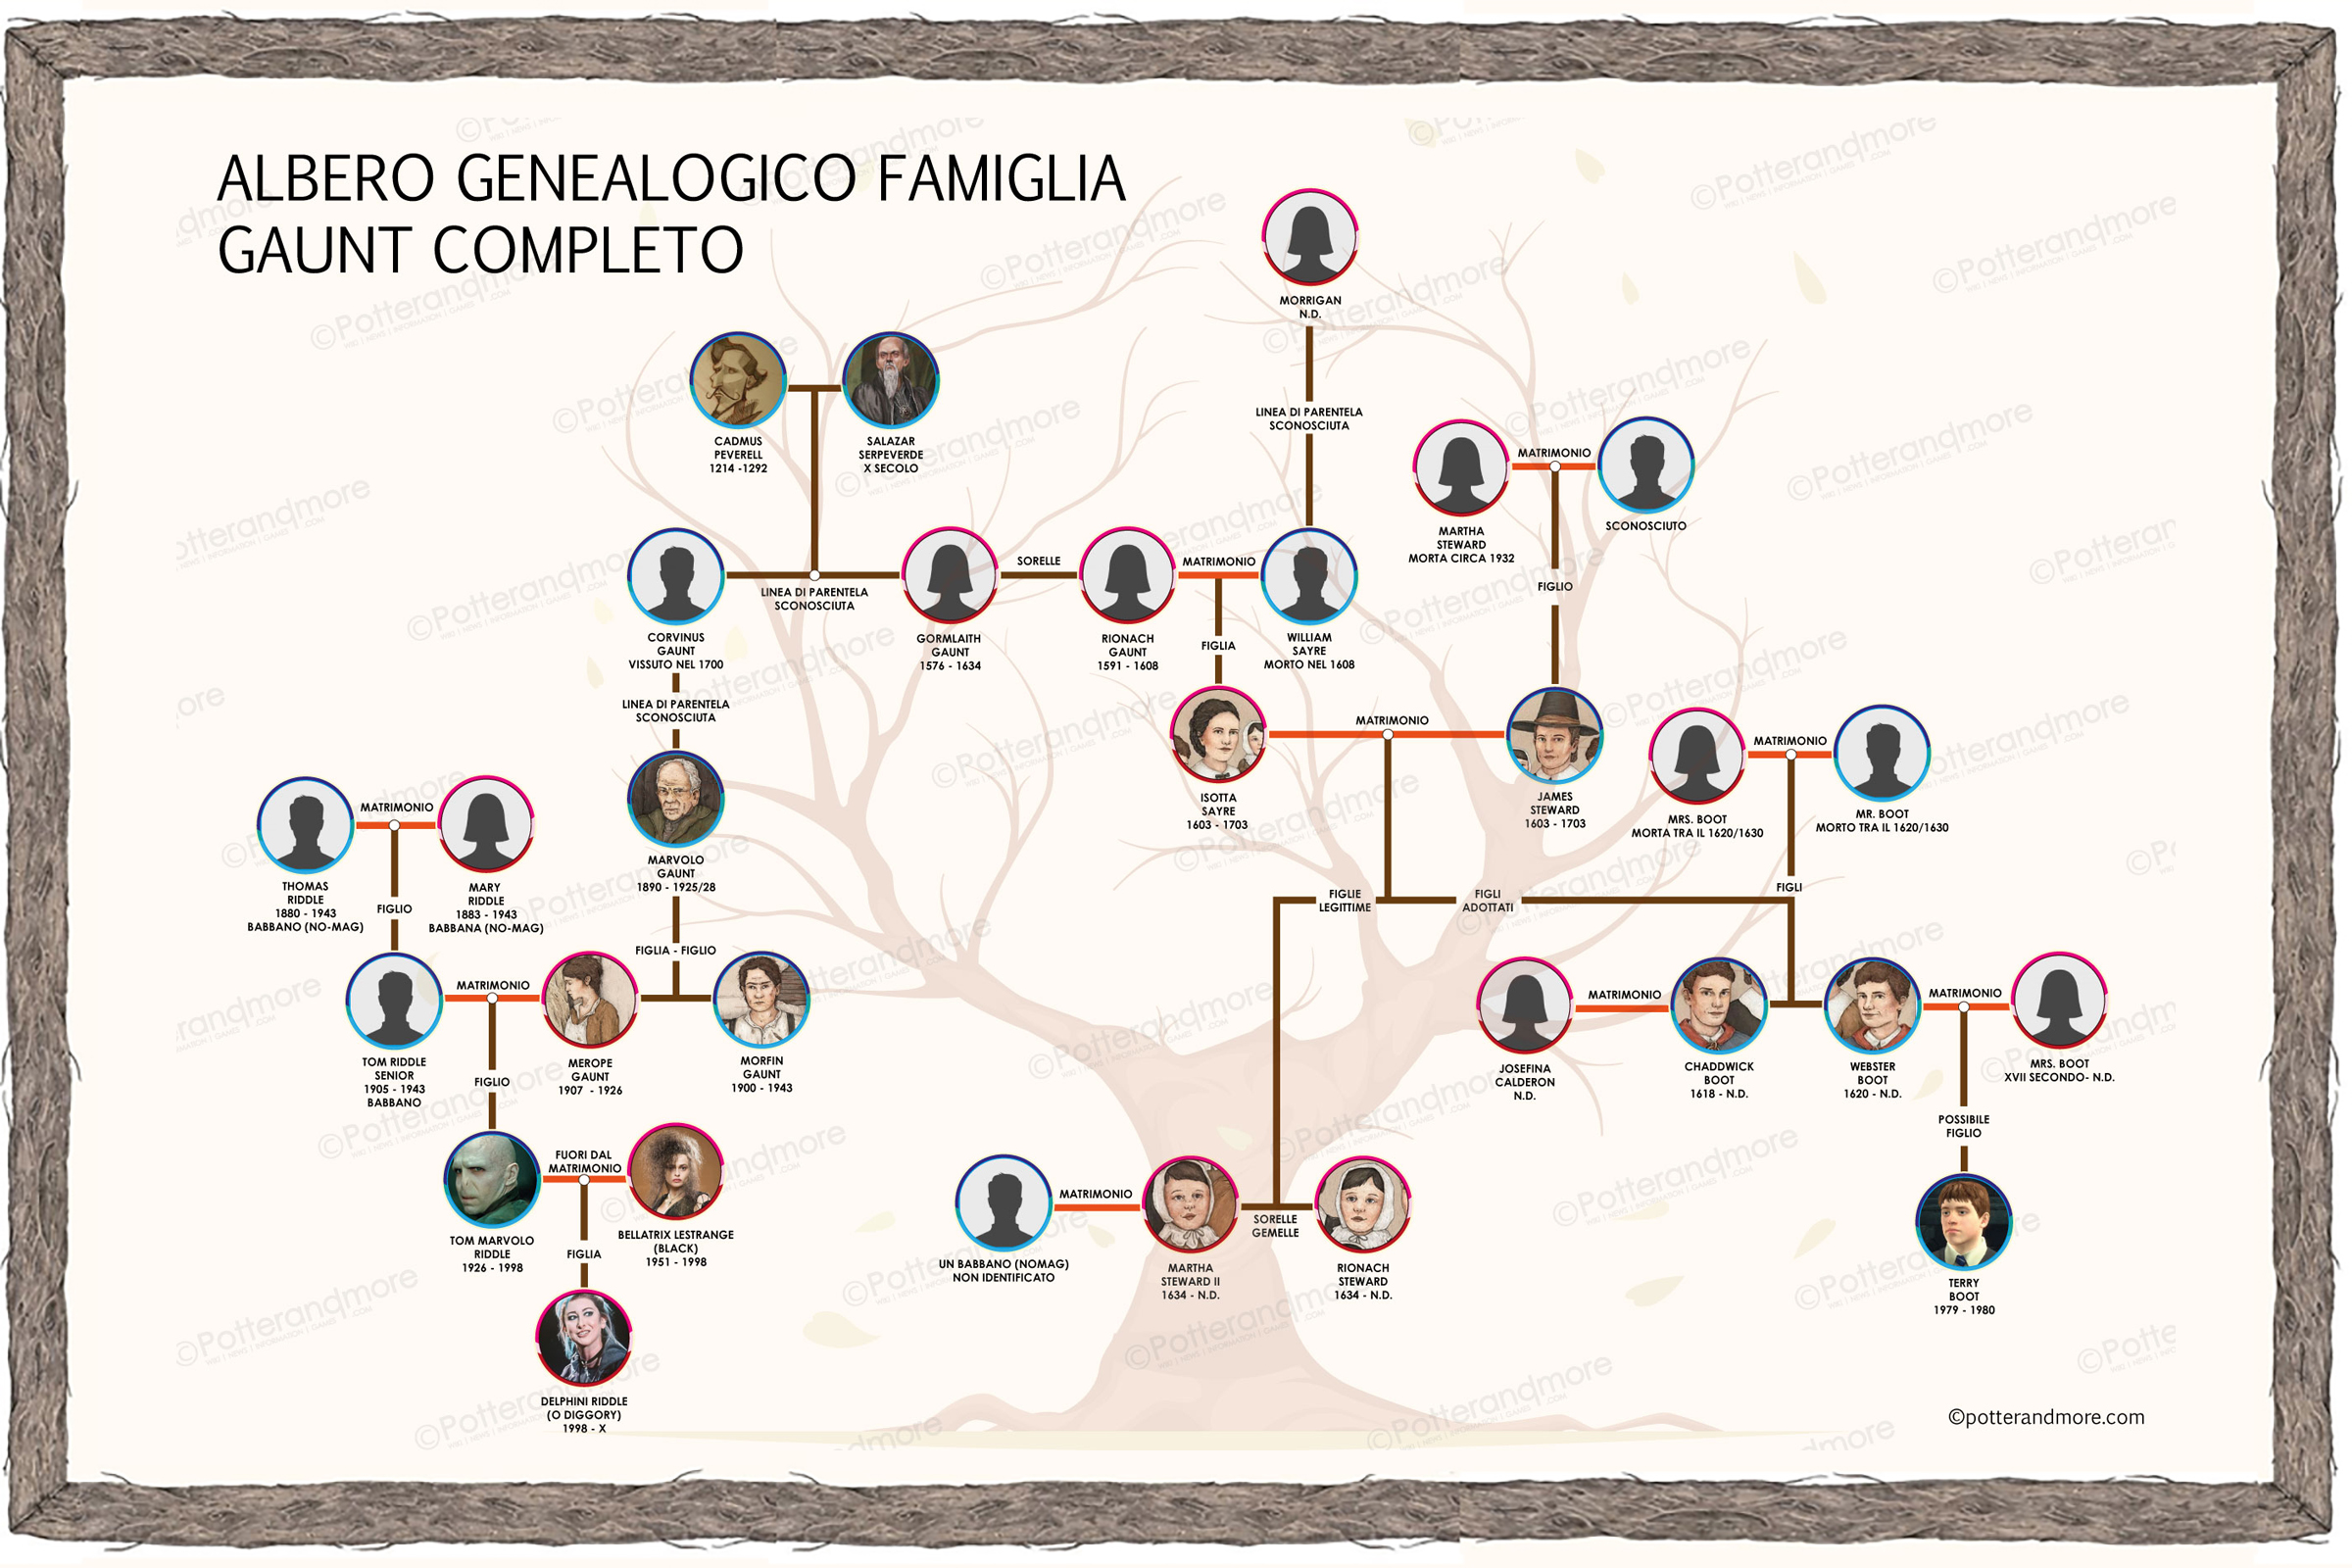 Albero genealogico famiglia gaunt